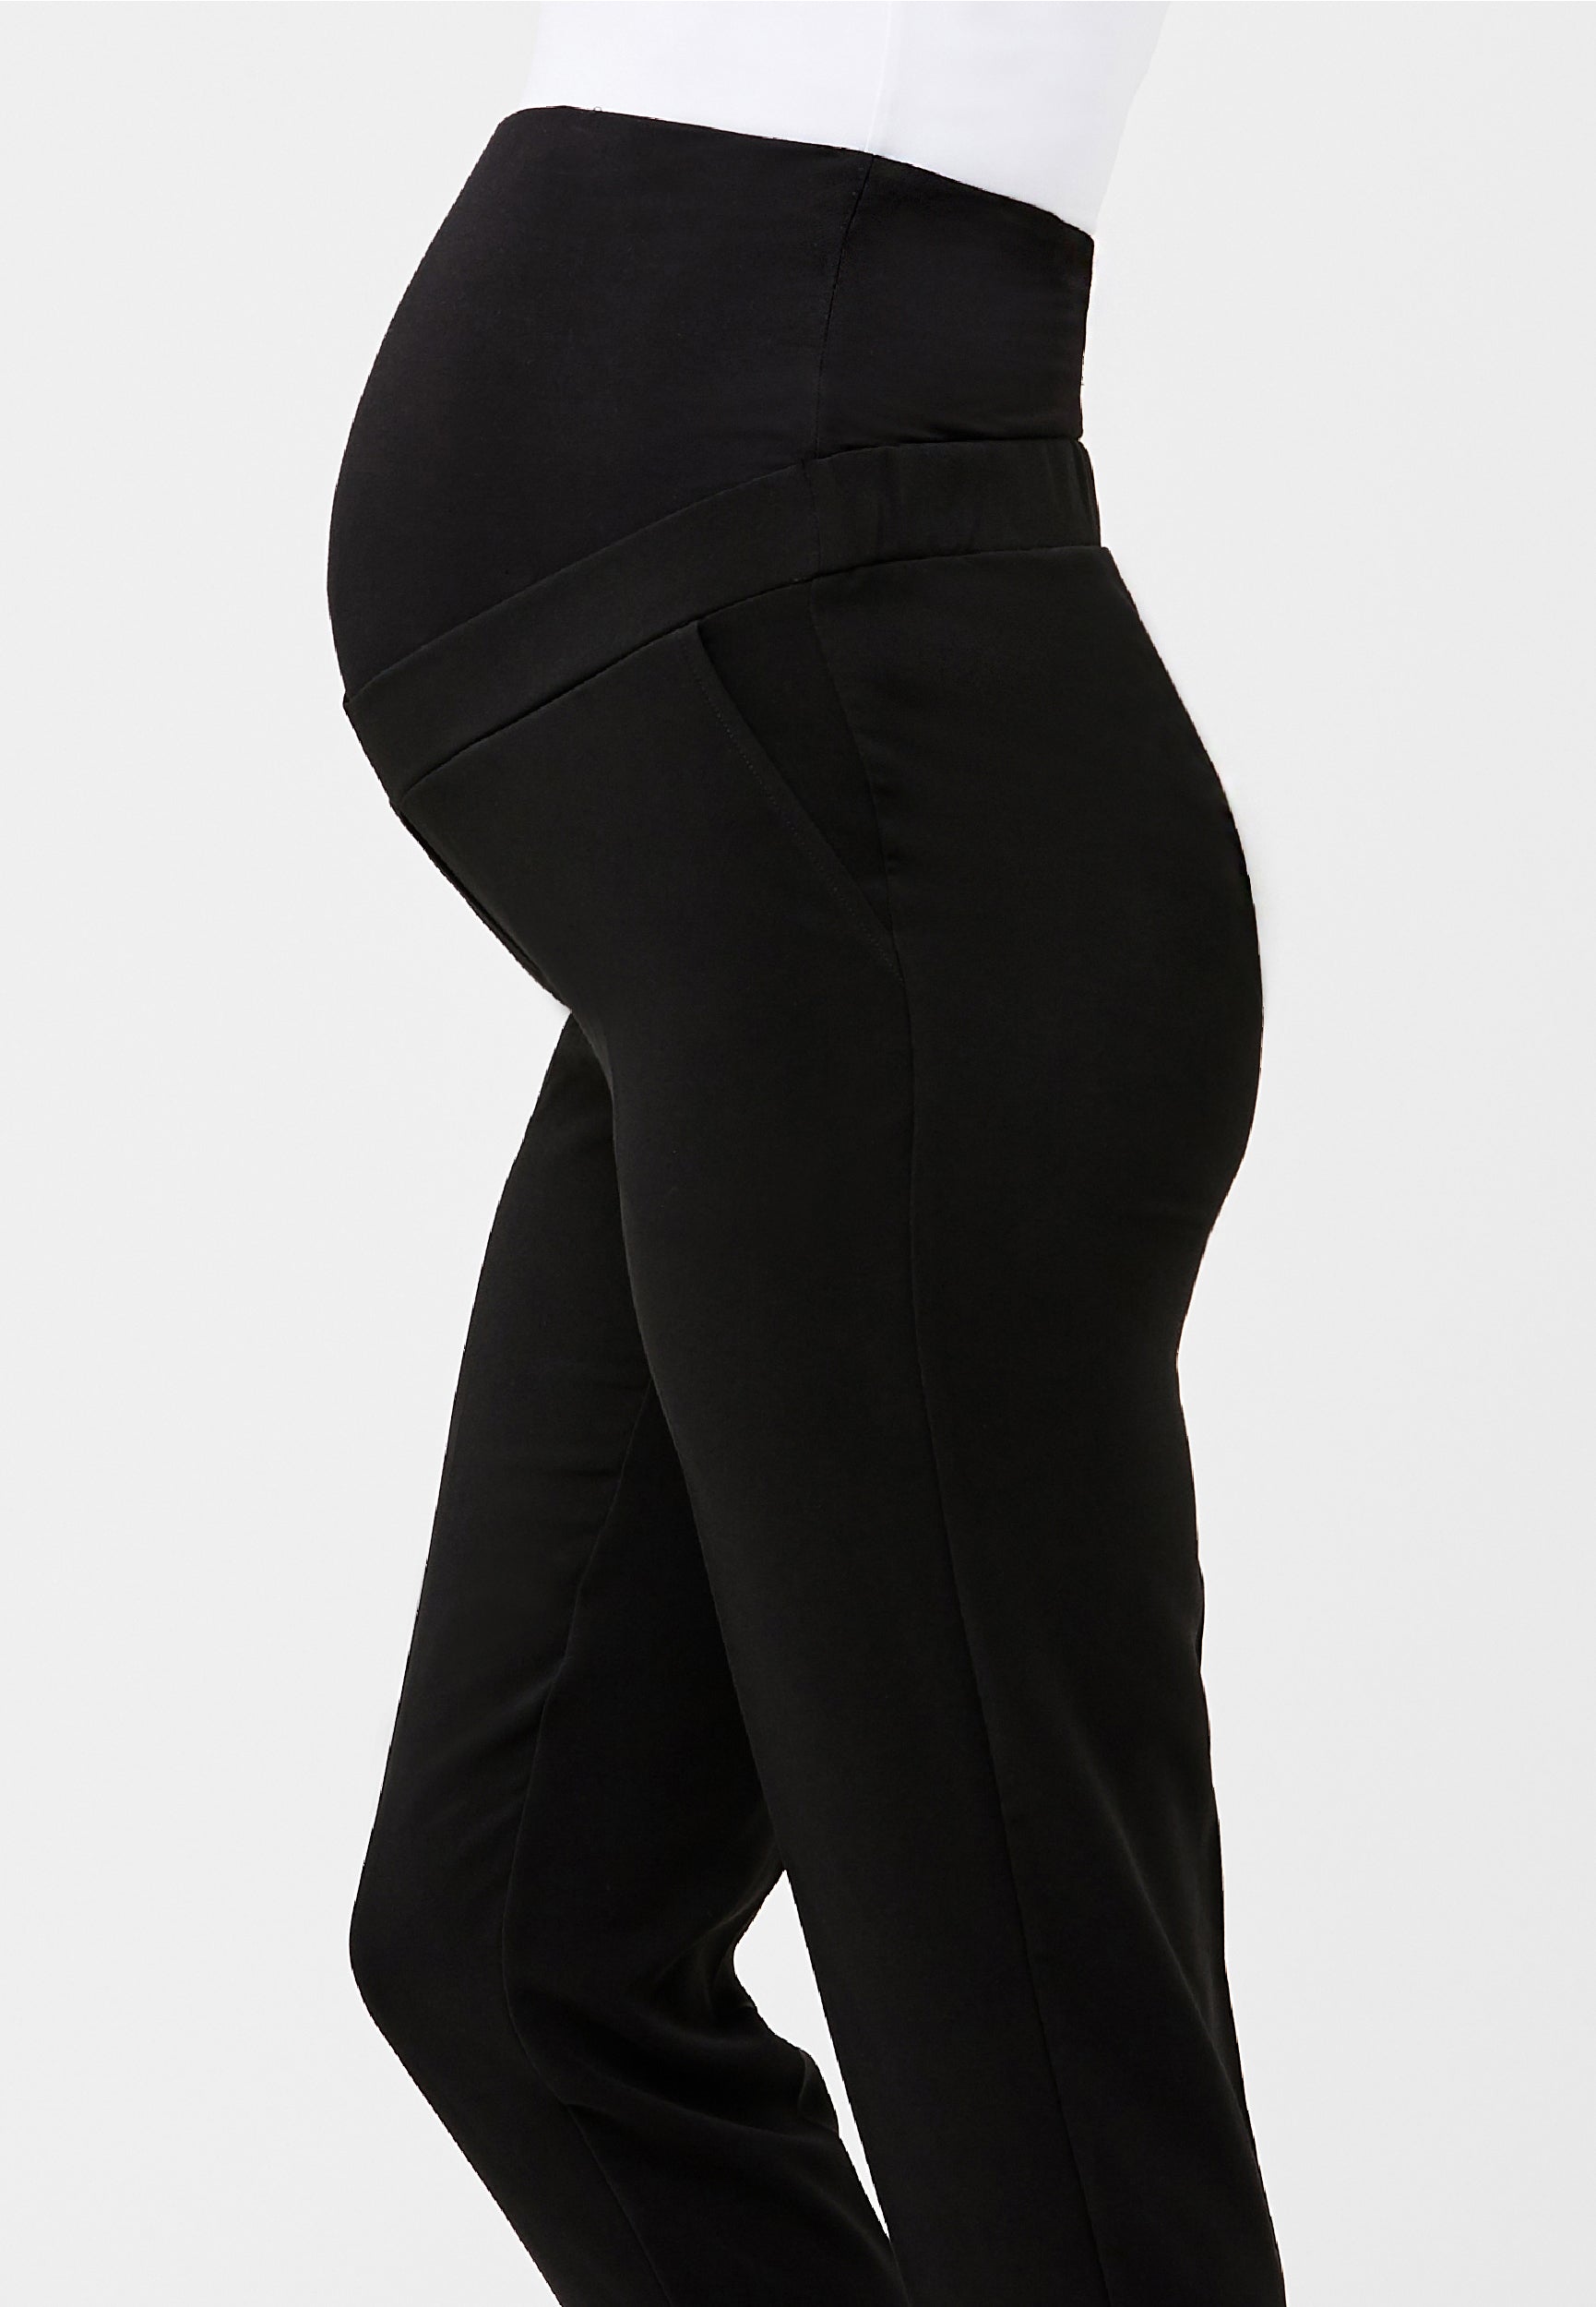 skpabo Leisure trousers for pregnant women, maternity leggings